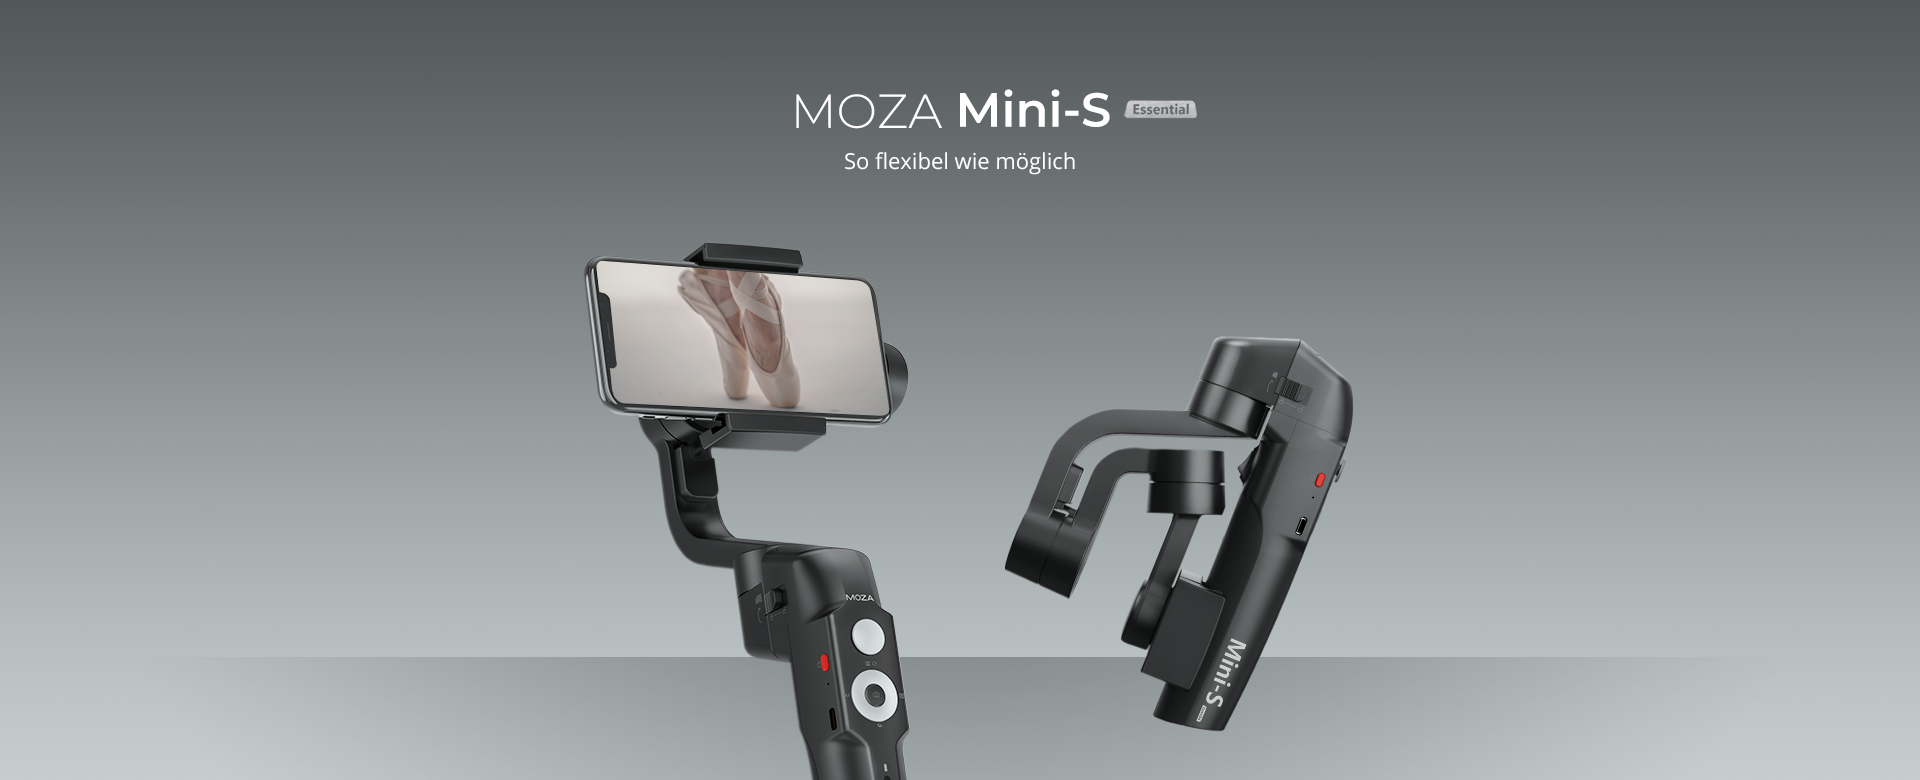 MOZA Mini-S Motion-Slider neu erfinden